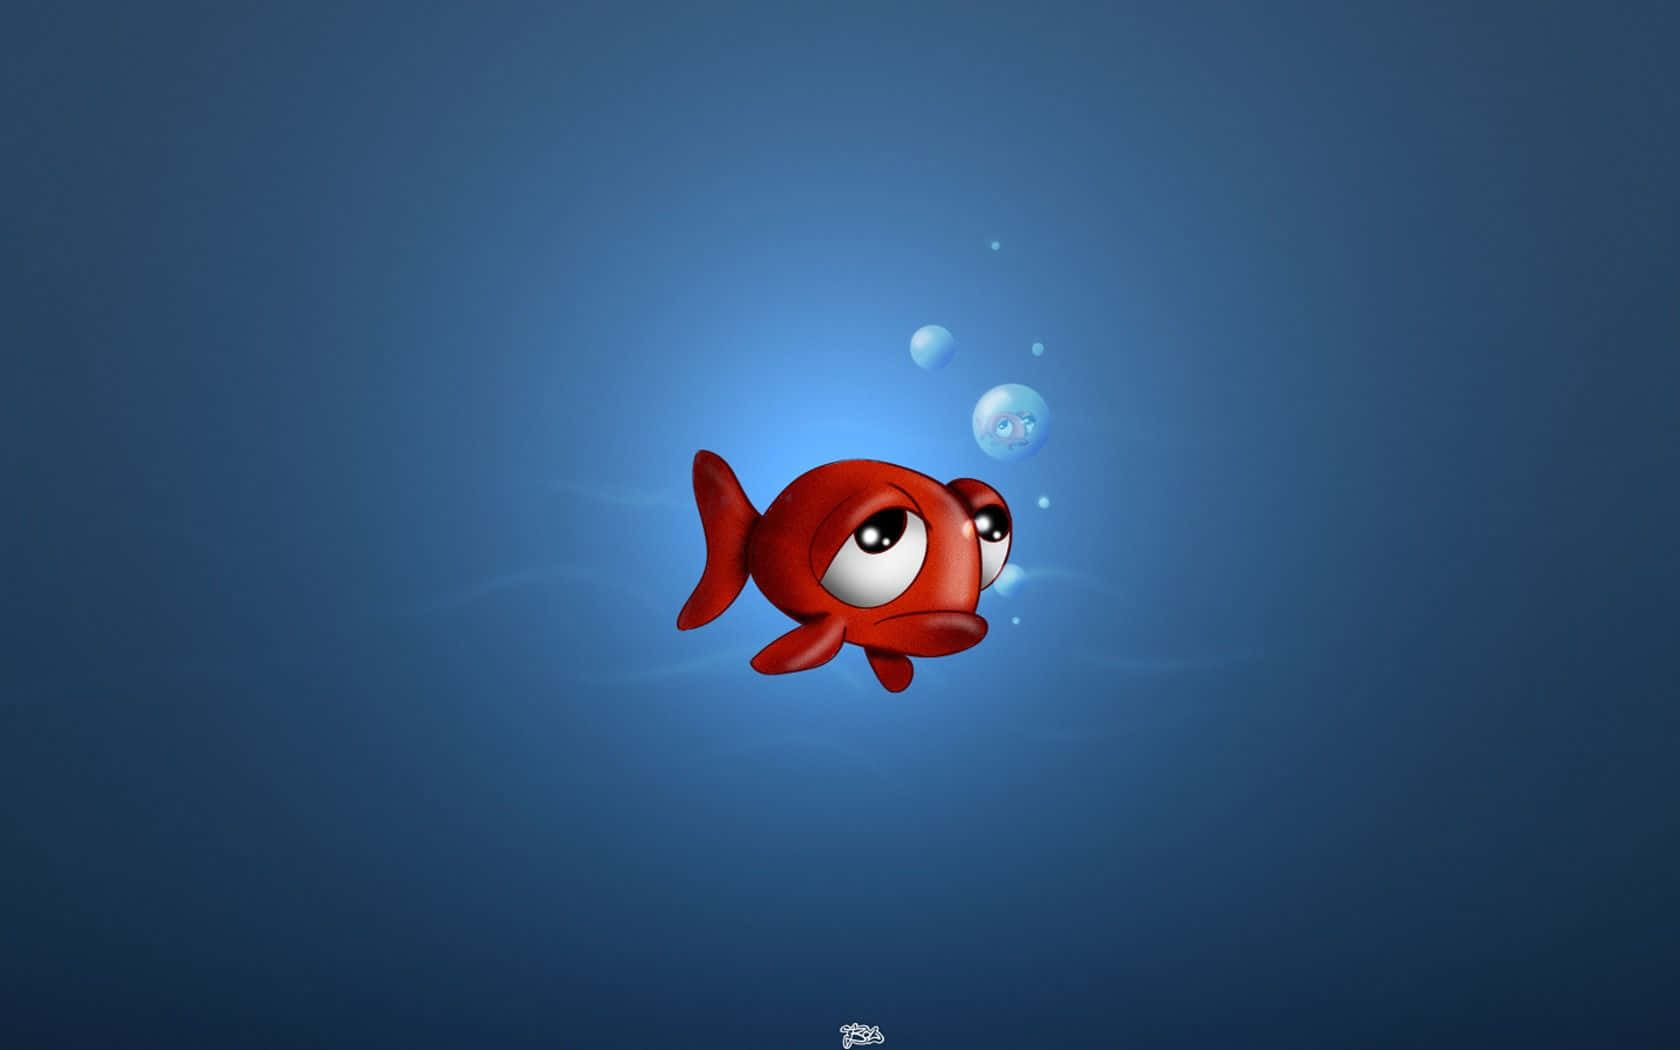 Realistic 3D Fish Swimming in a Vibrant Underwater Scene Wallpaper